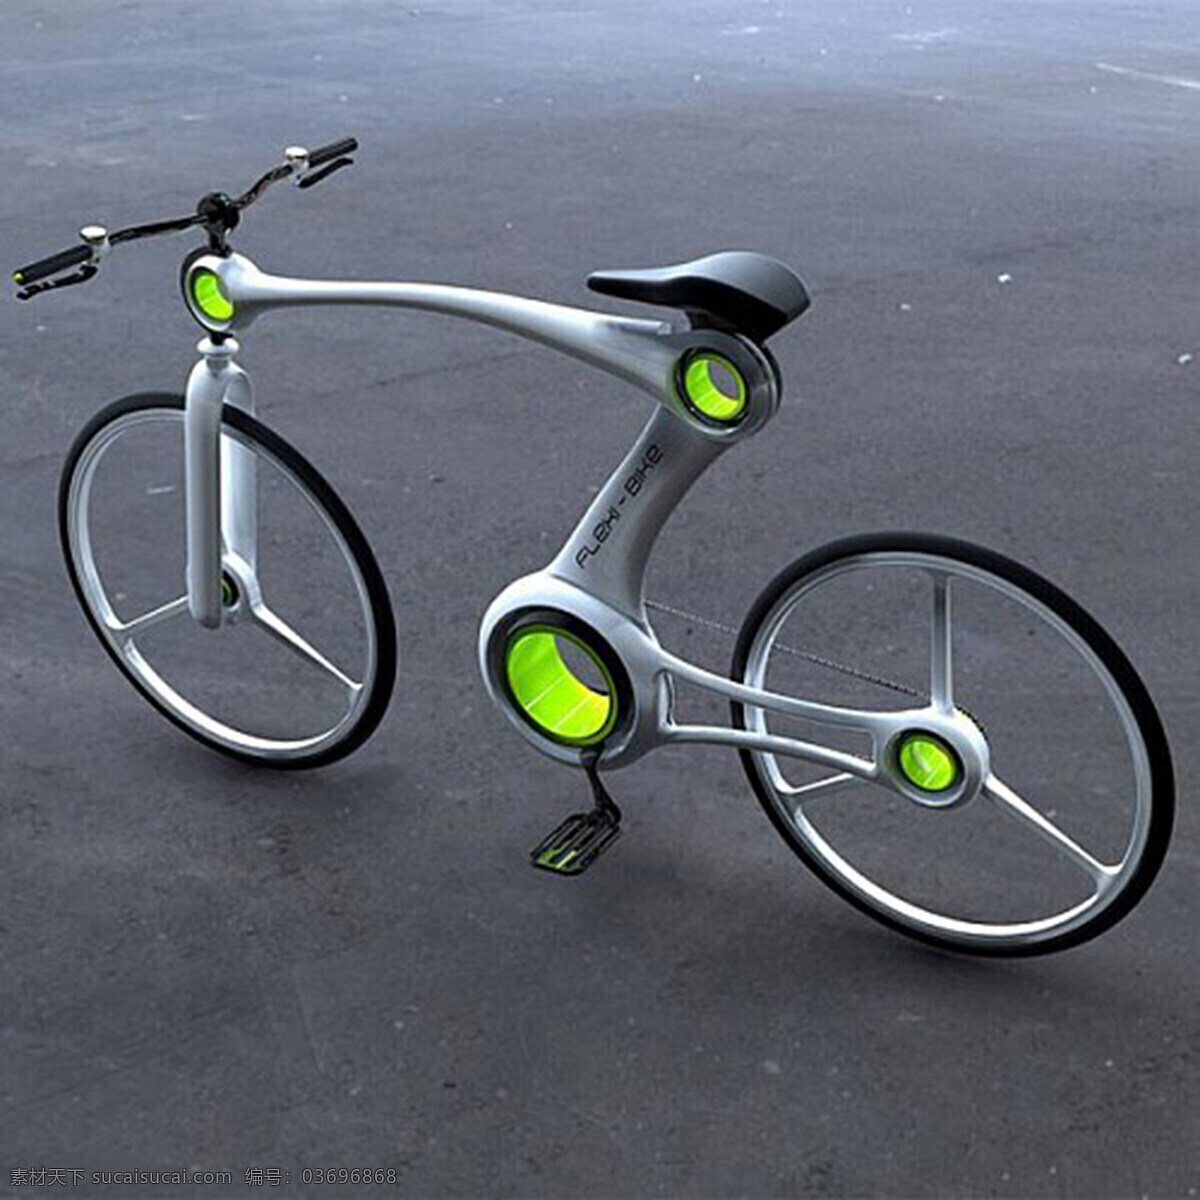 灵动 概念 自行车 产品设计 大气 工业设计 交通 酷炫 时尚